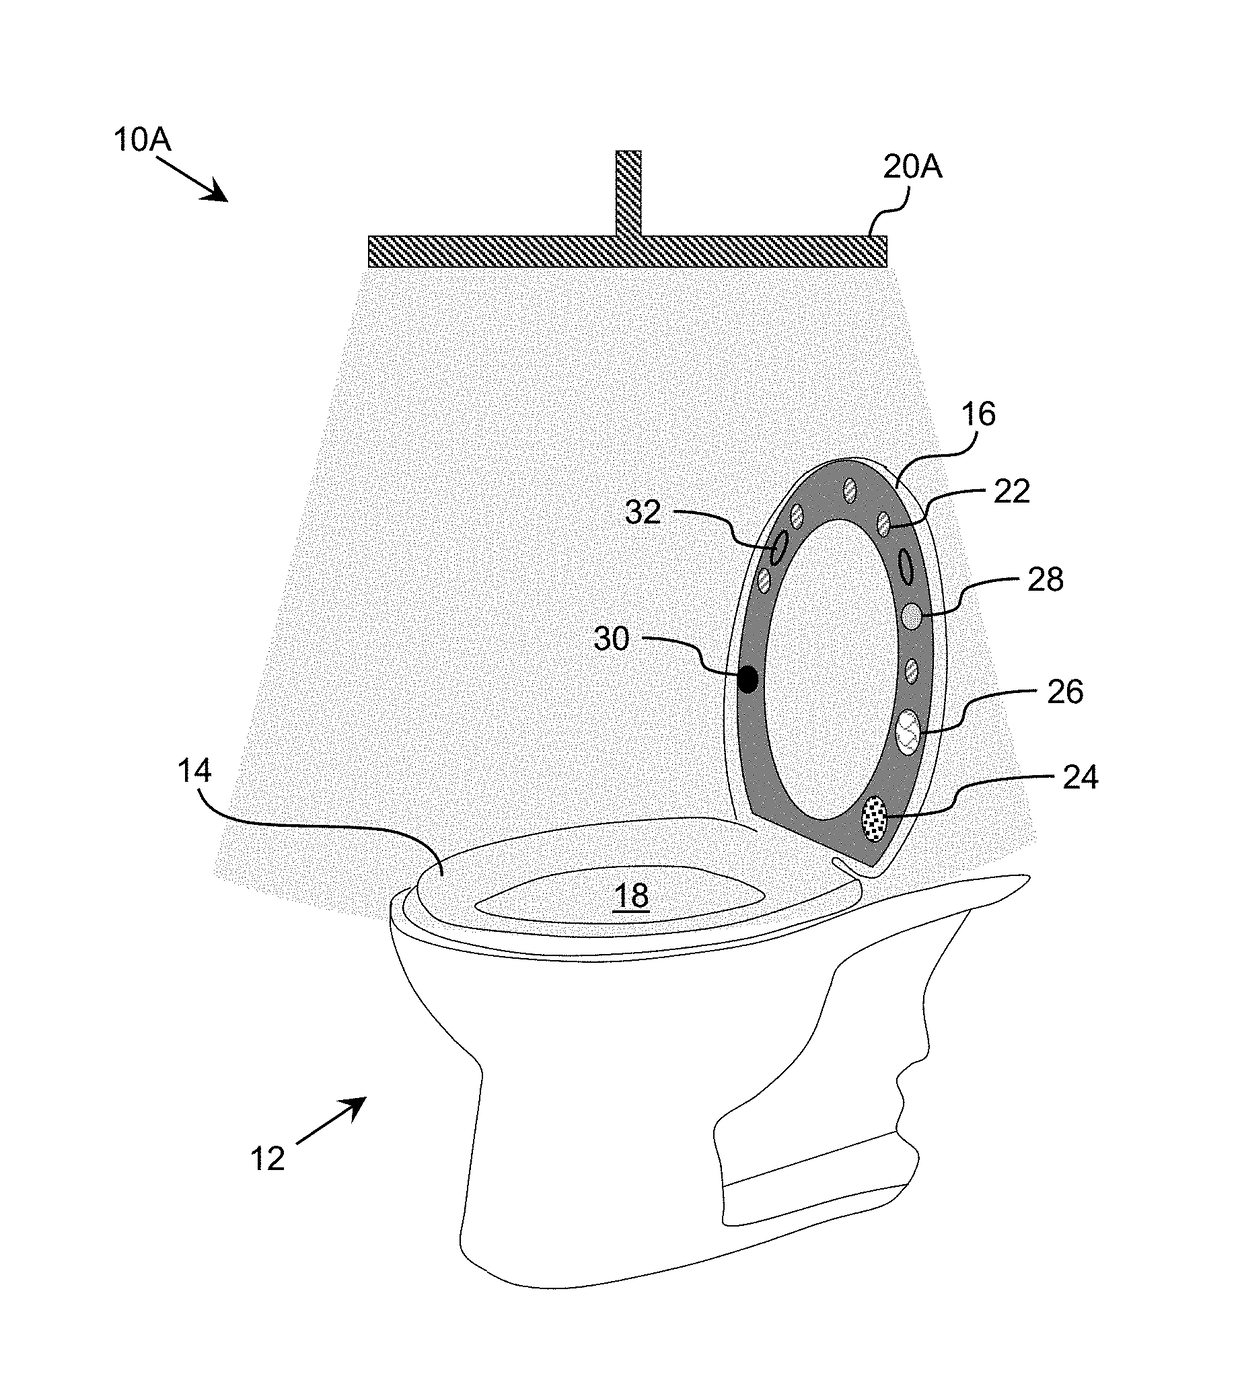 Ultraviolet-based bathroom surface sanitization